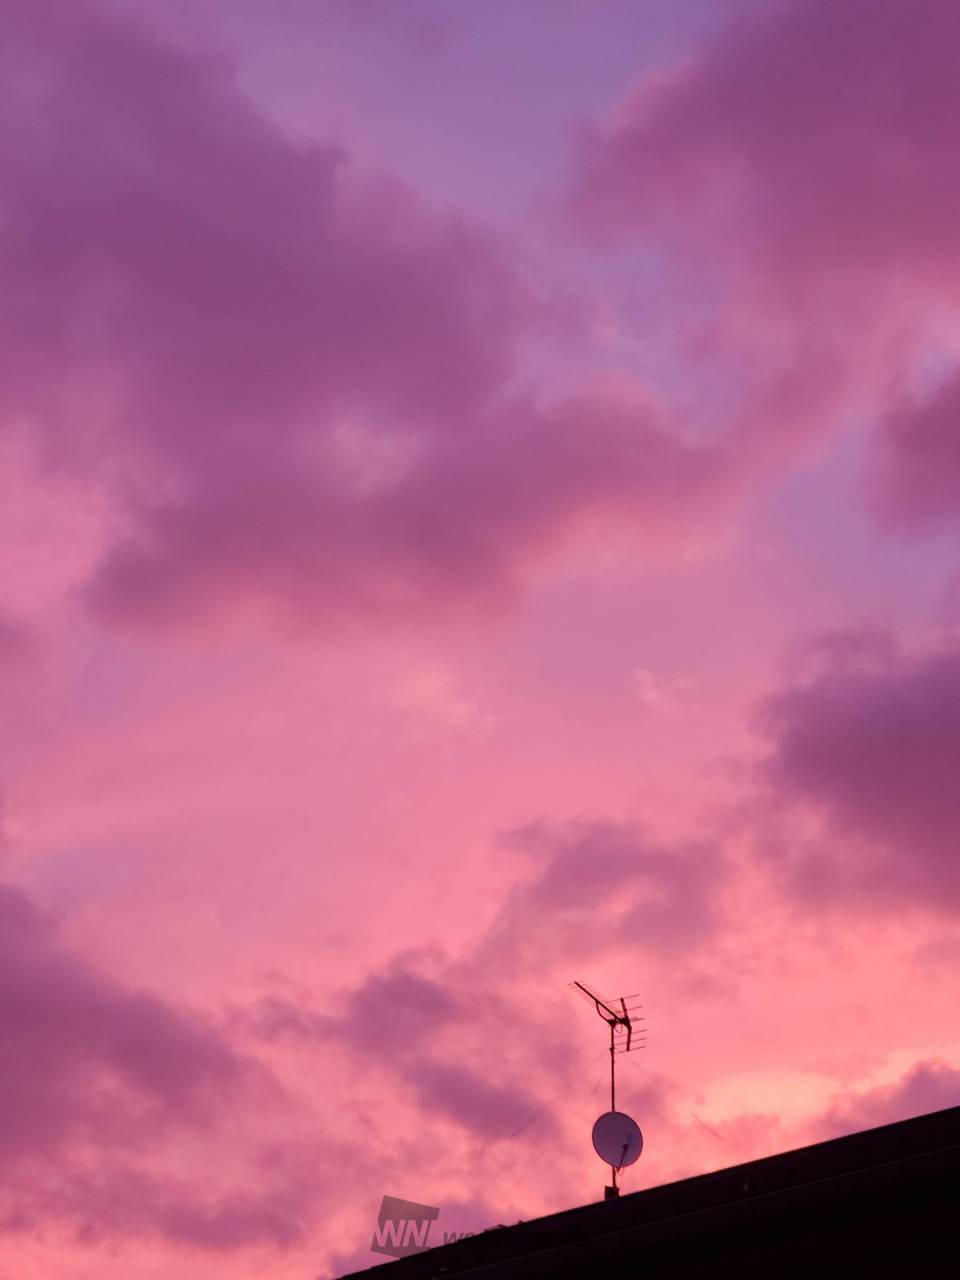 紫やピンクの朝焼け 注目の空の写真 ウェザーニュース